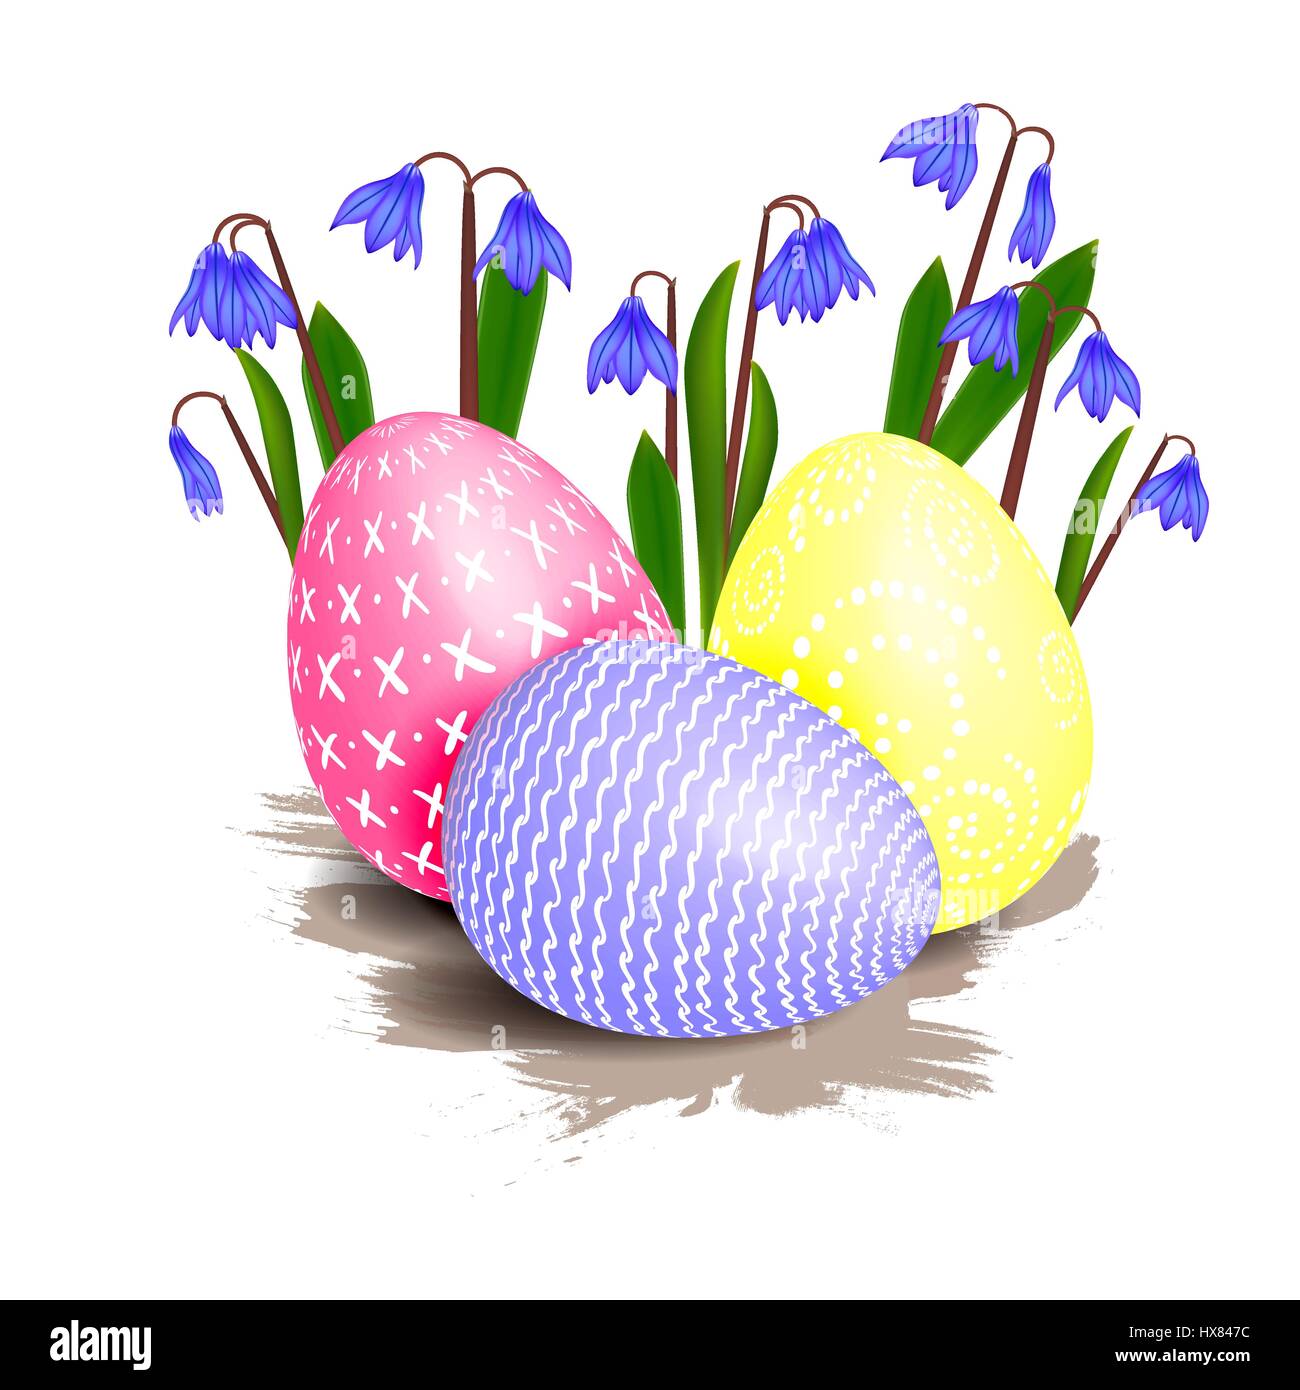 Mehrere helle farbige Ostereier verziert mit Mustern, umgeben von blauen Primel Frühlingsblumen mit grünen Blättern auf einem weißen Hintergrund. Glücklich e Stock Vektor